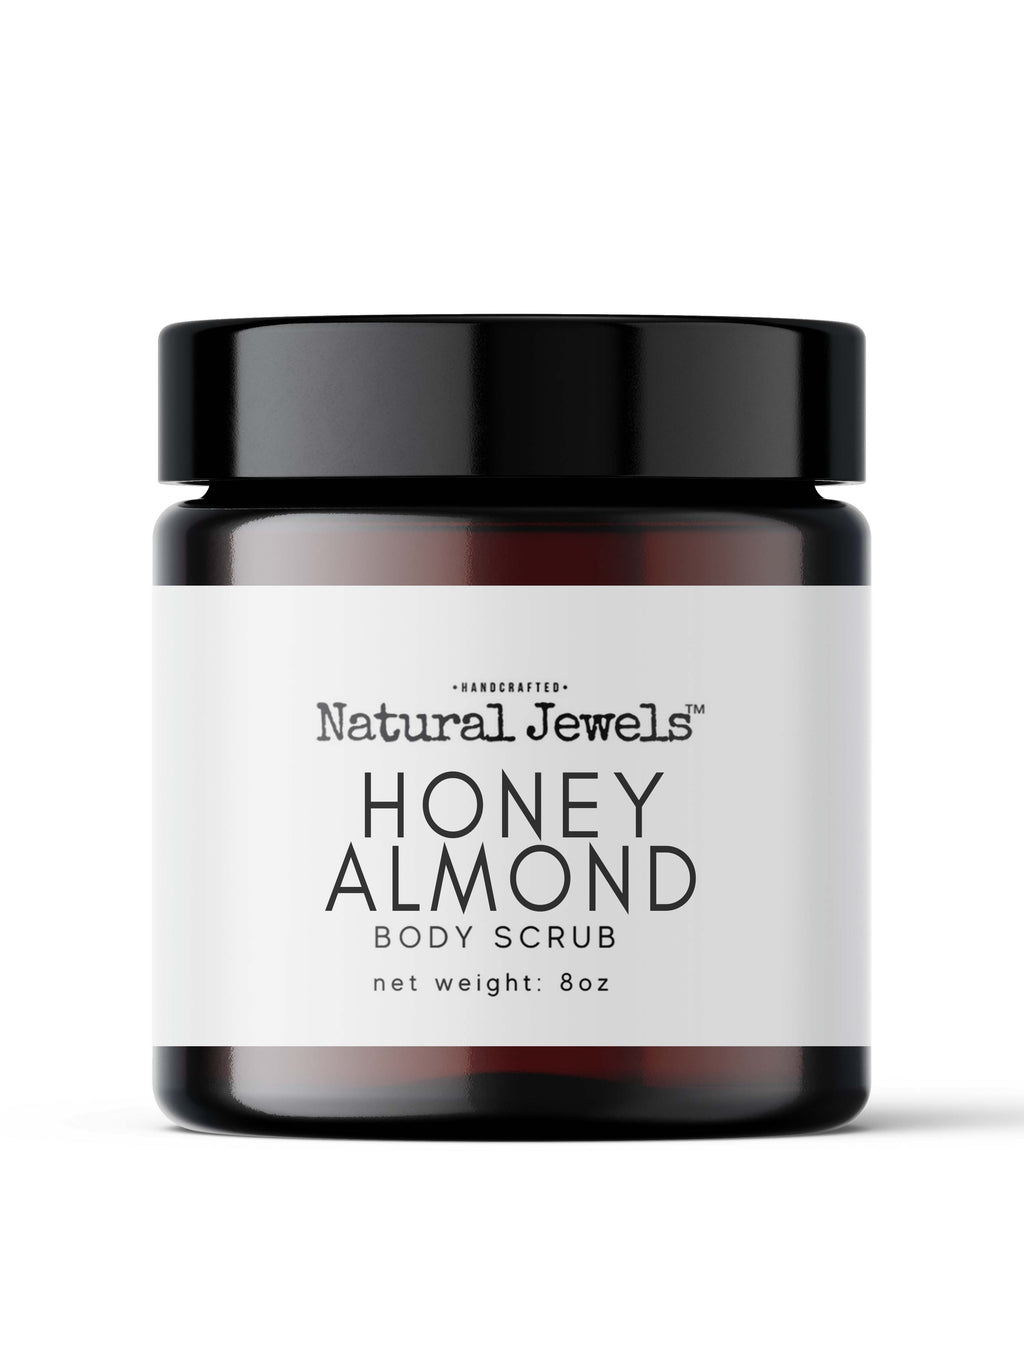 Honey Almond Body Scrub